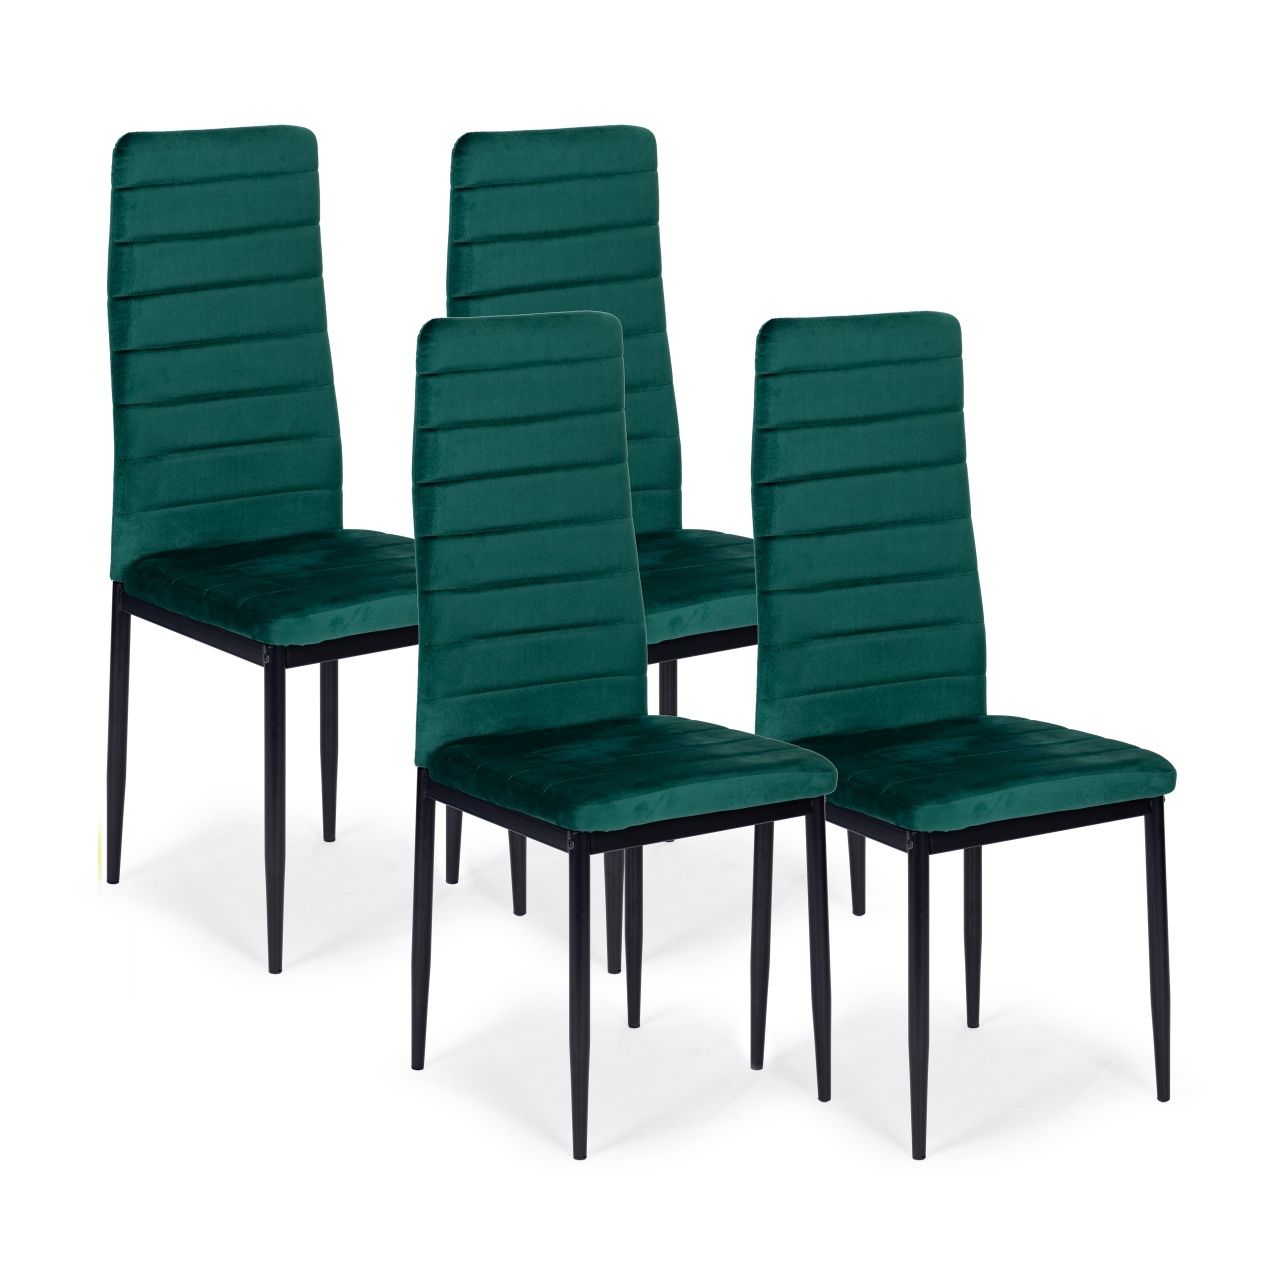 Nowe Krzesla Velvet z wyprofilowanym oparciem cena za Sztukę